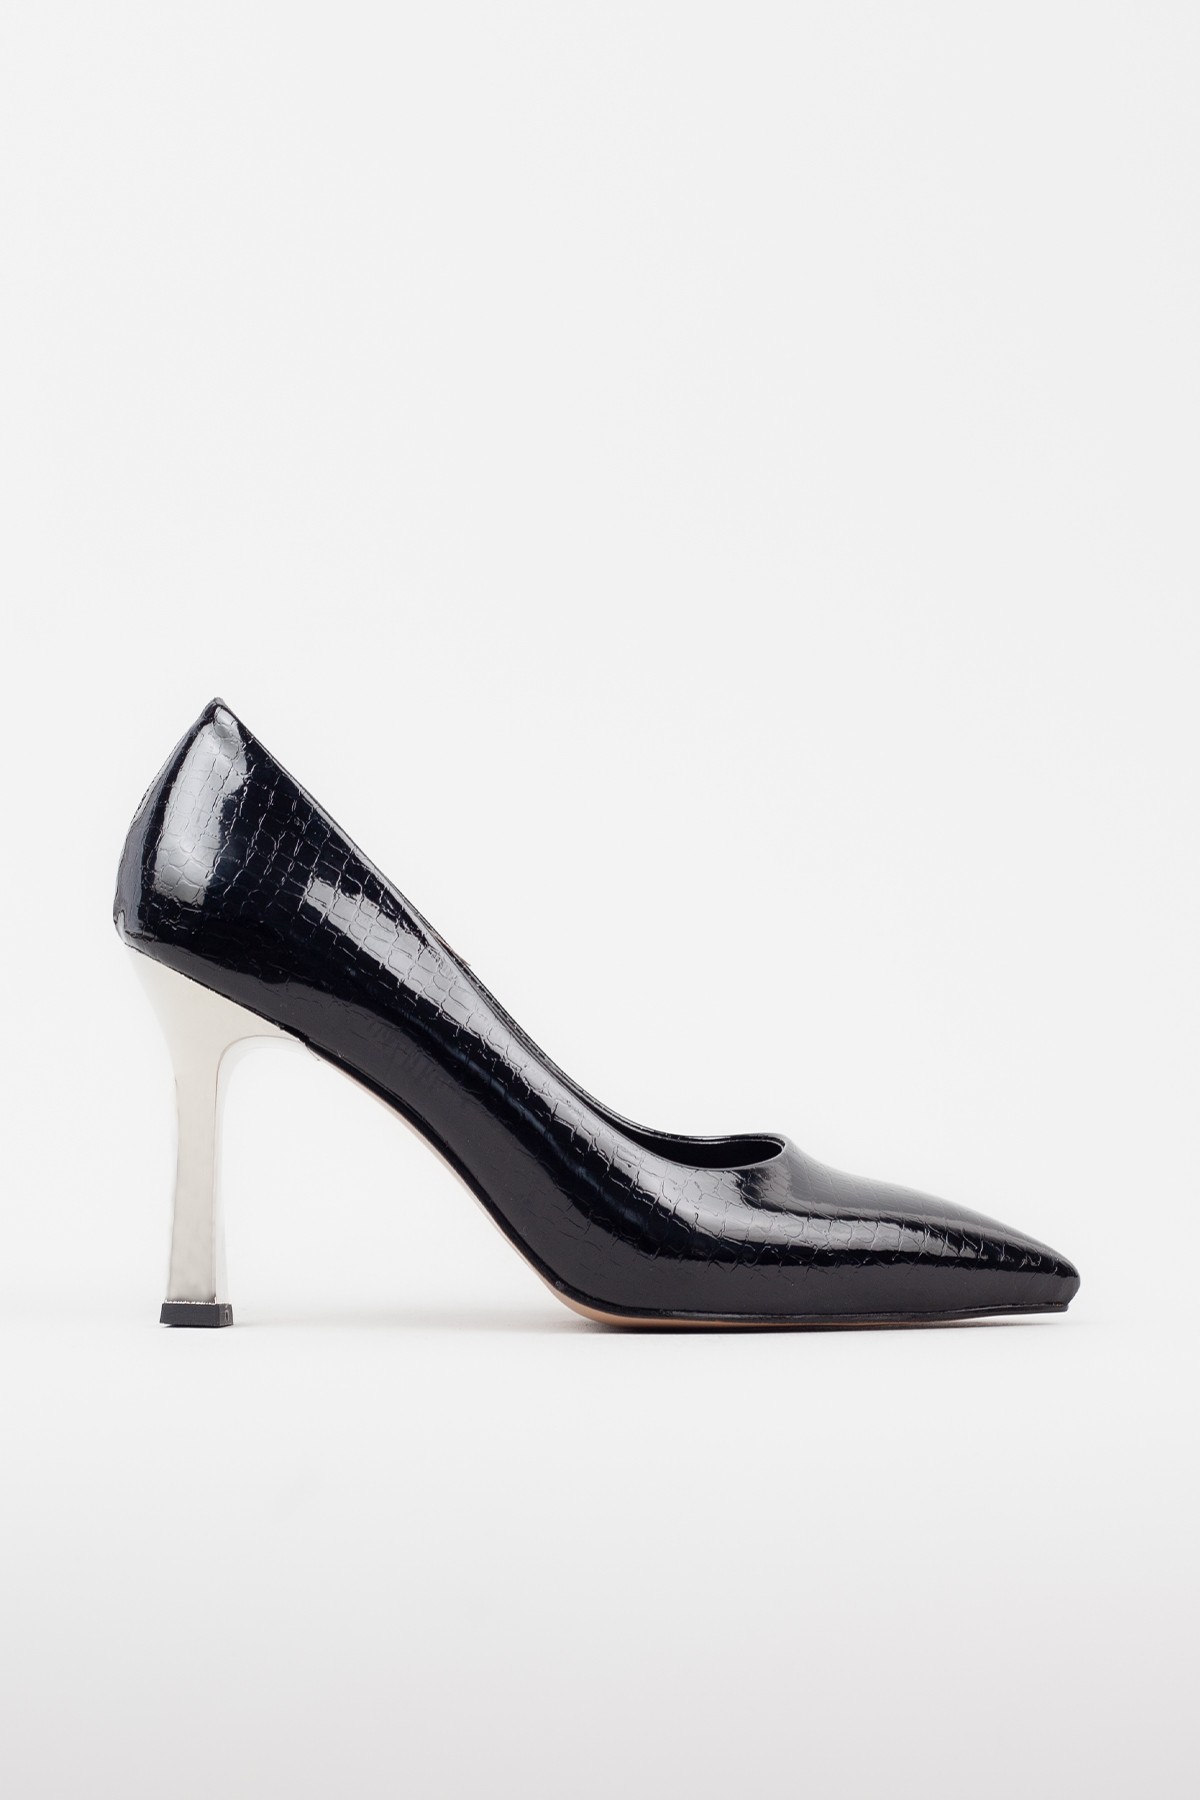 Kadın Gümüş Topuklu Şık Topuklu Ayakkabı